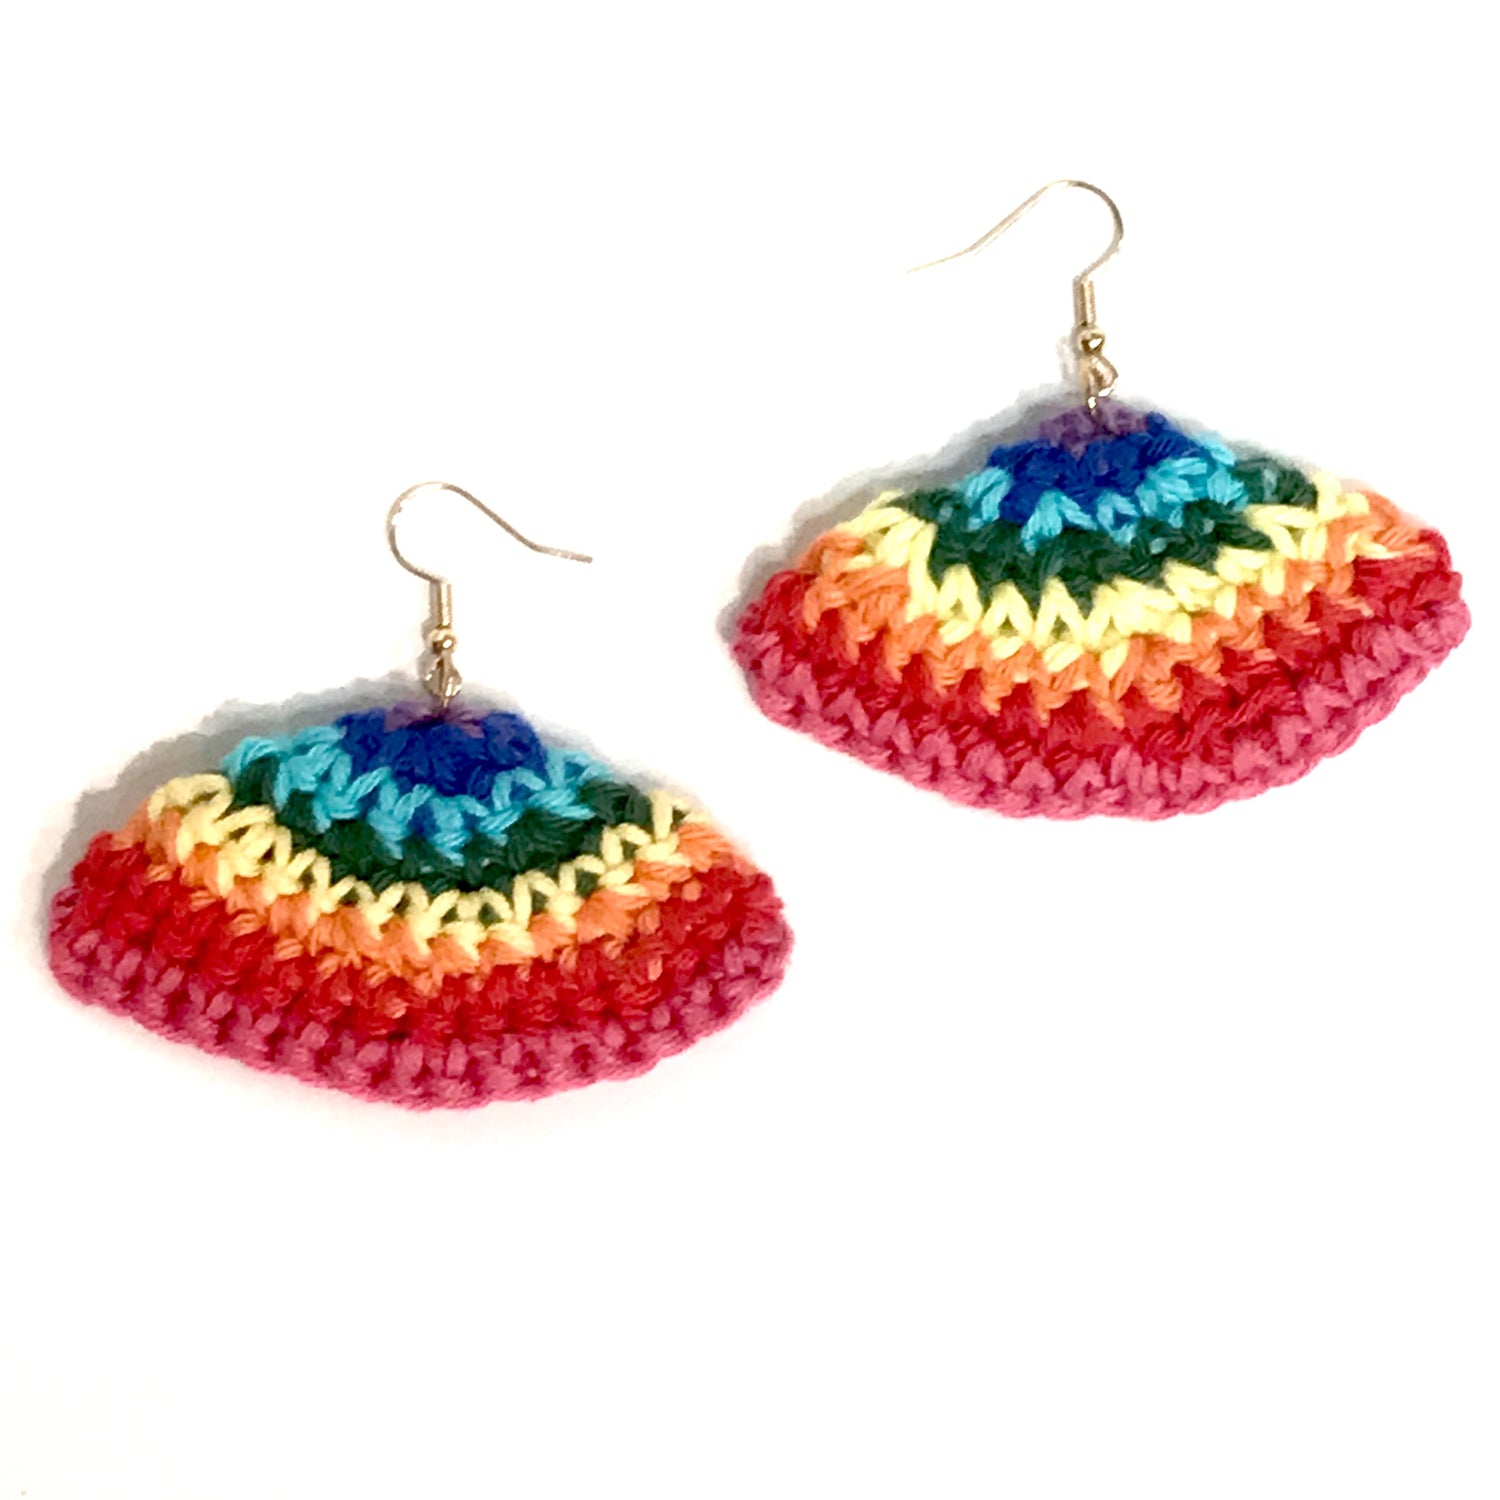 Rainbow earrings pride